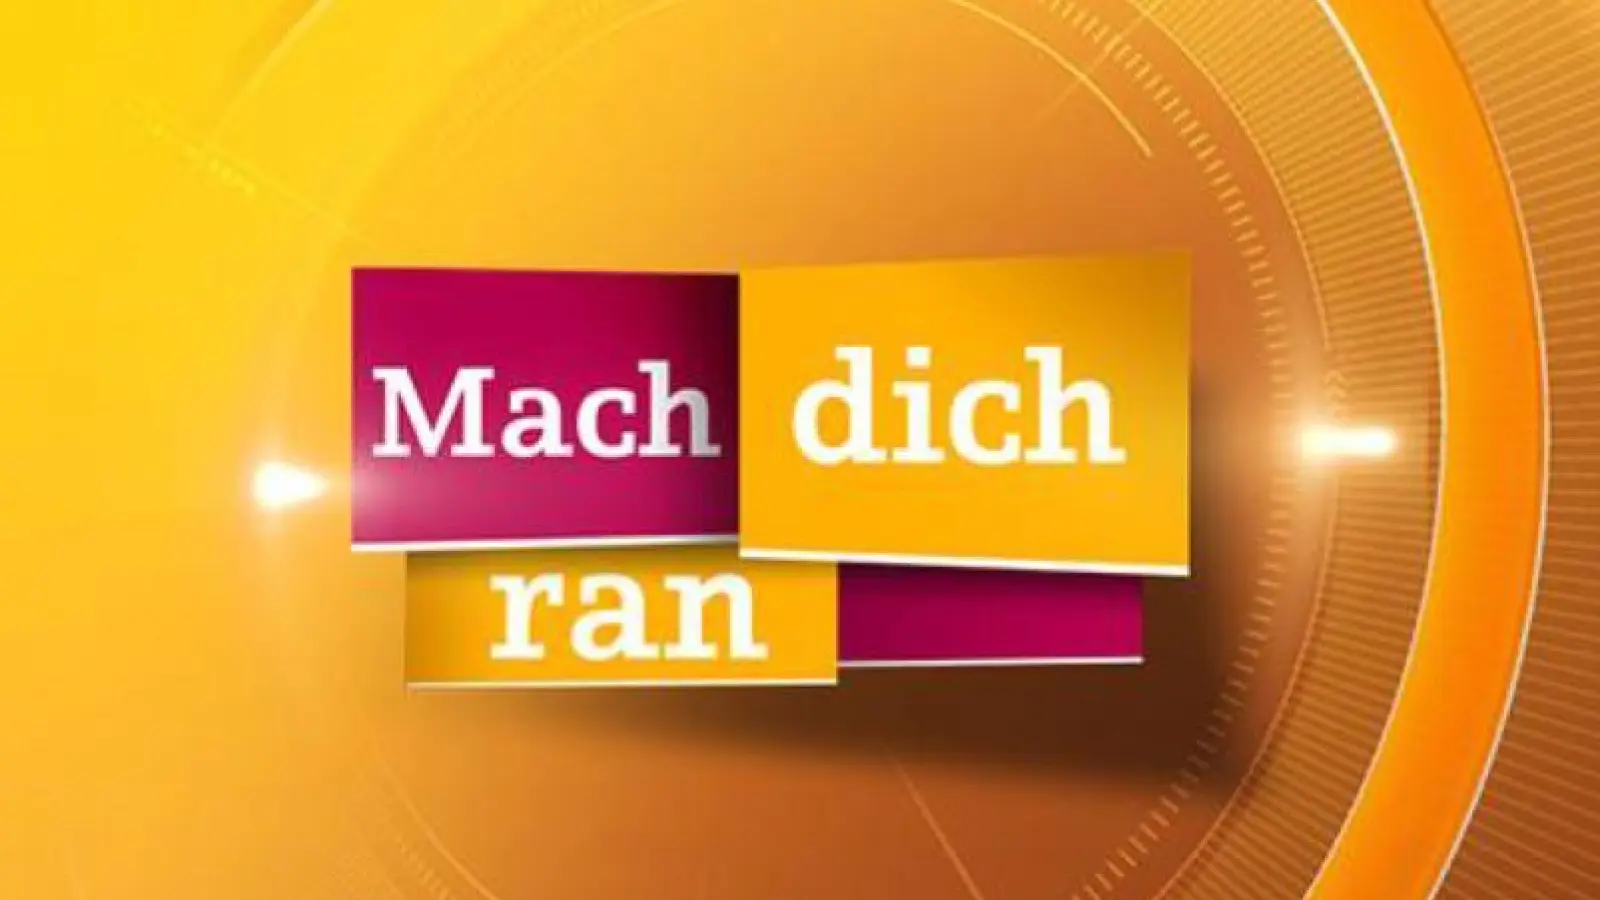 MDR zeichnet Fernsehsendung „Mach dich ran” im Tauchaer Schloss auf (Foto: taucha-kompakt.de)